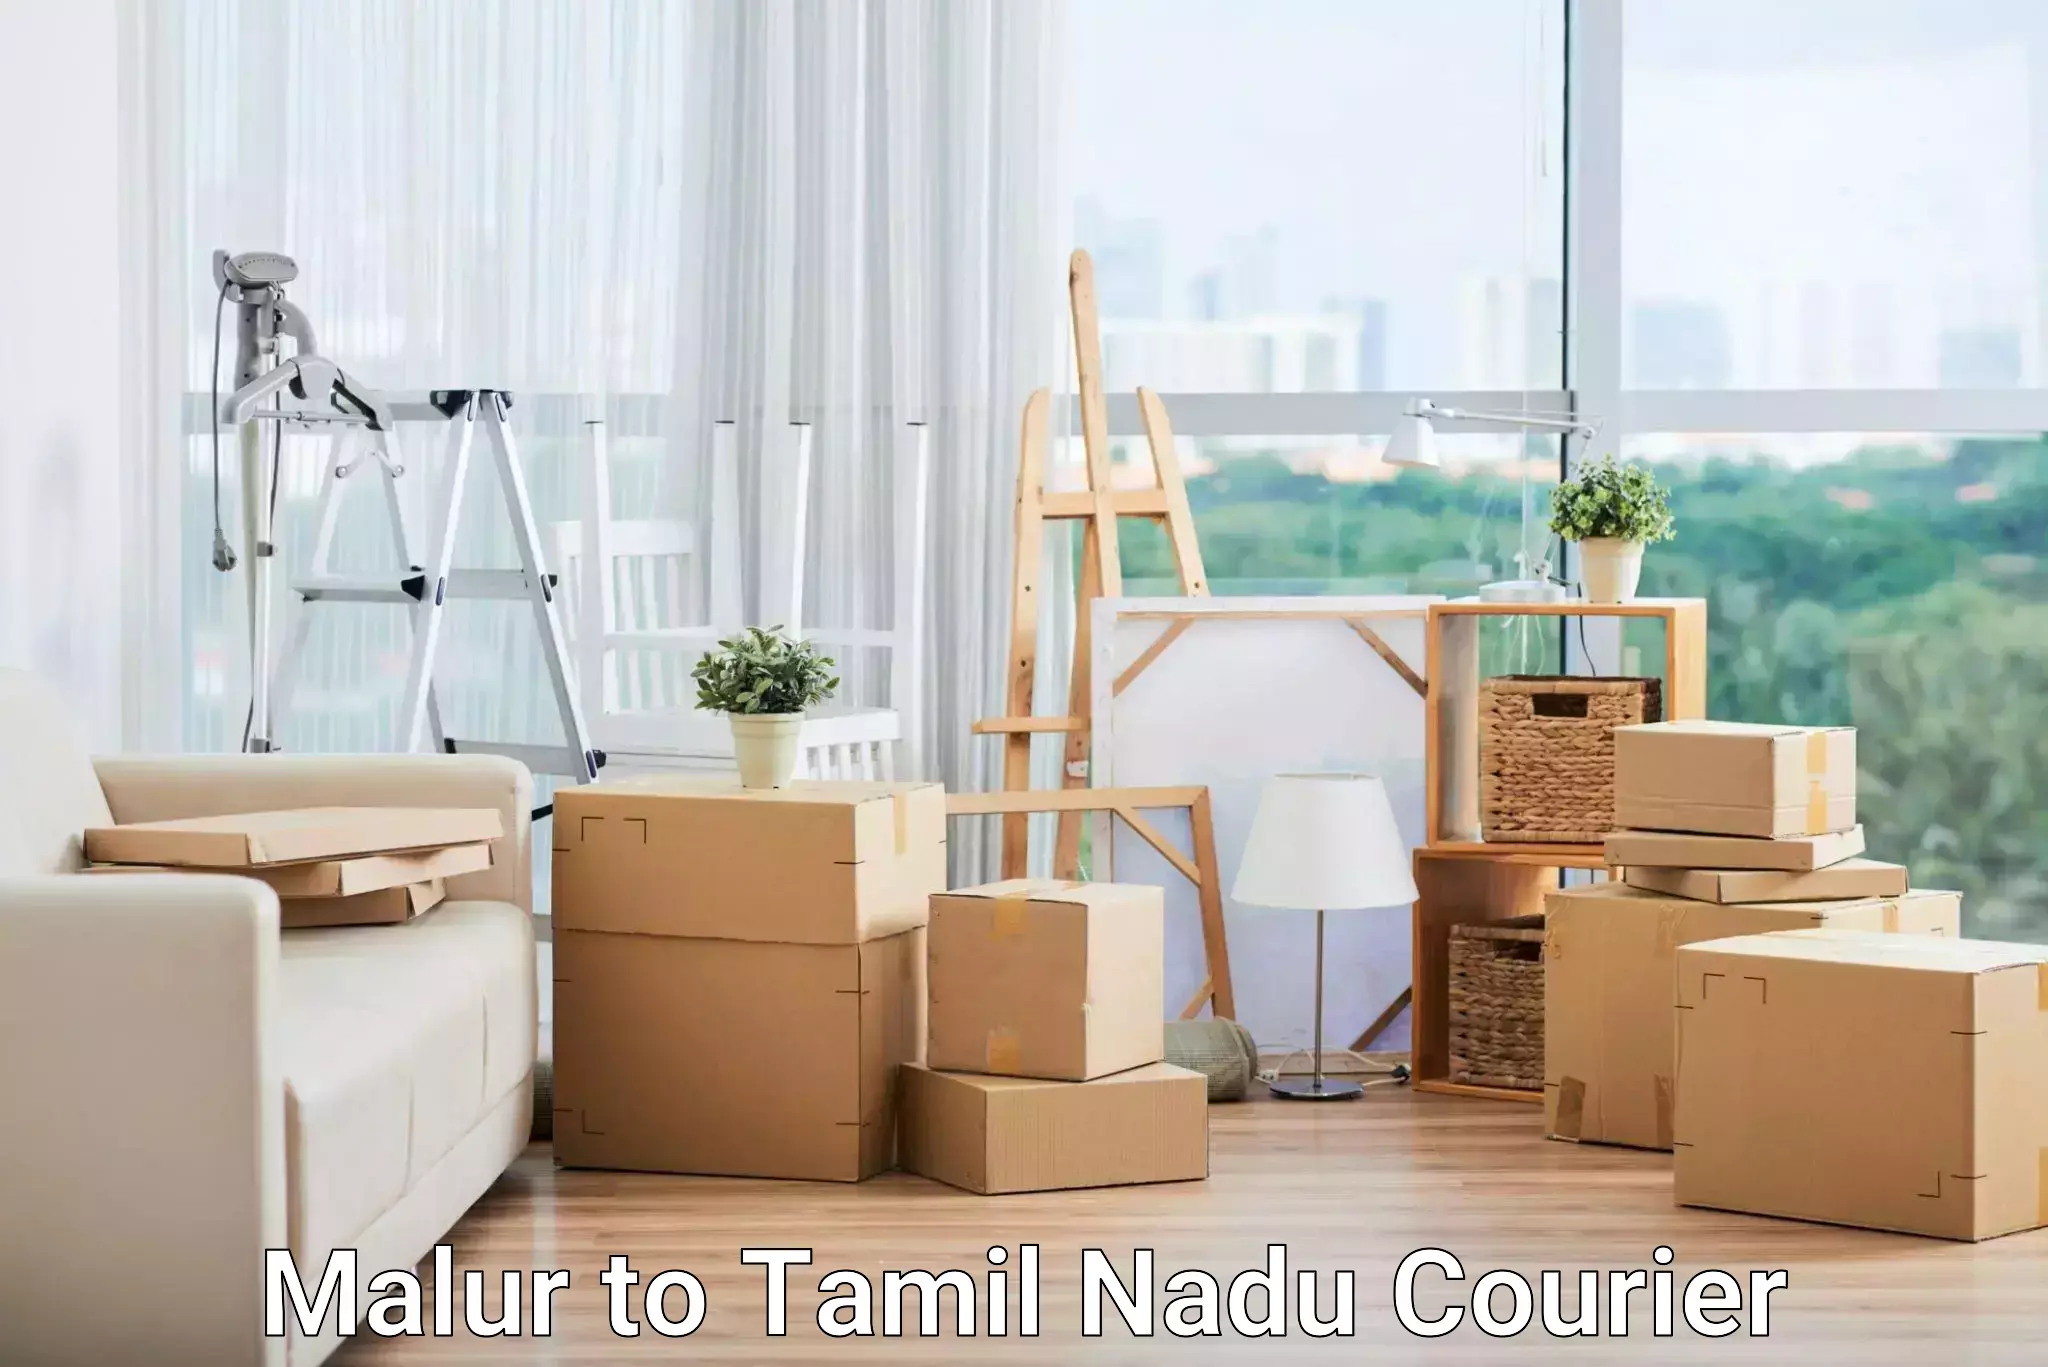 Express logistics service Malur to Tamil Nadu